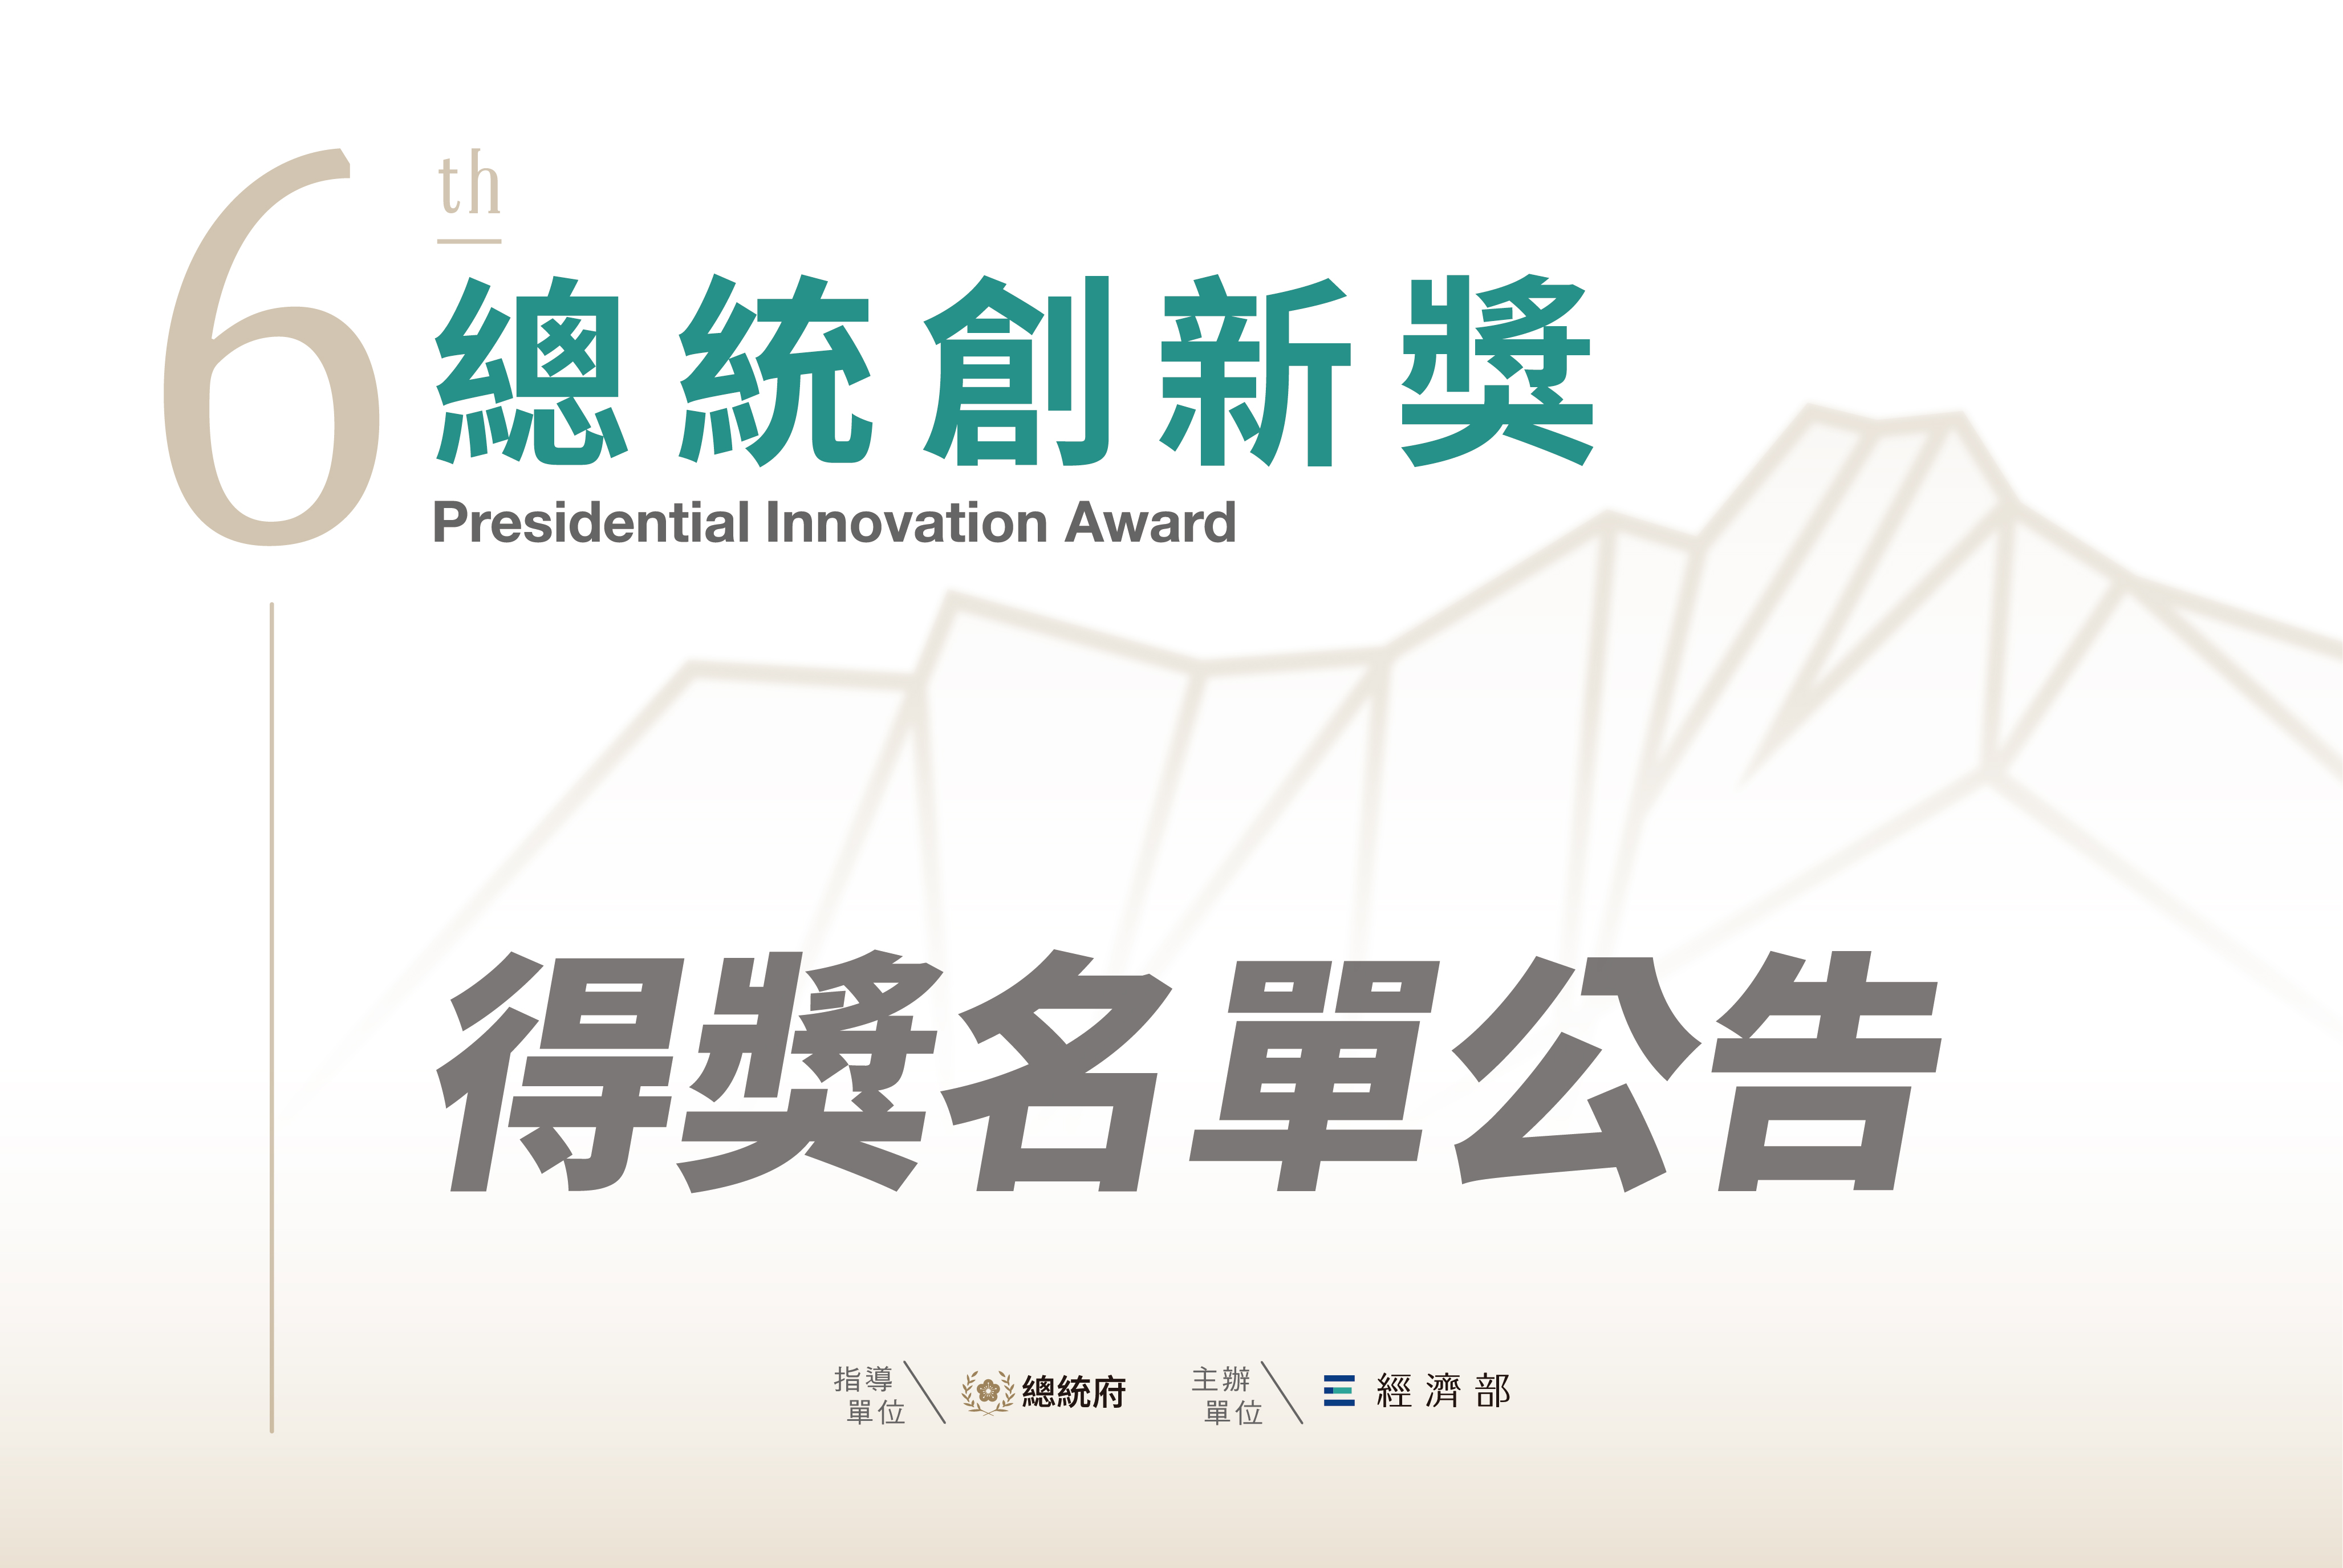 第六屆「總統創新獎」得獎名單